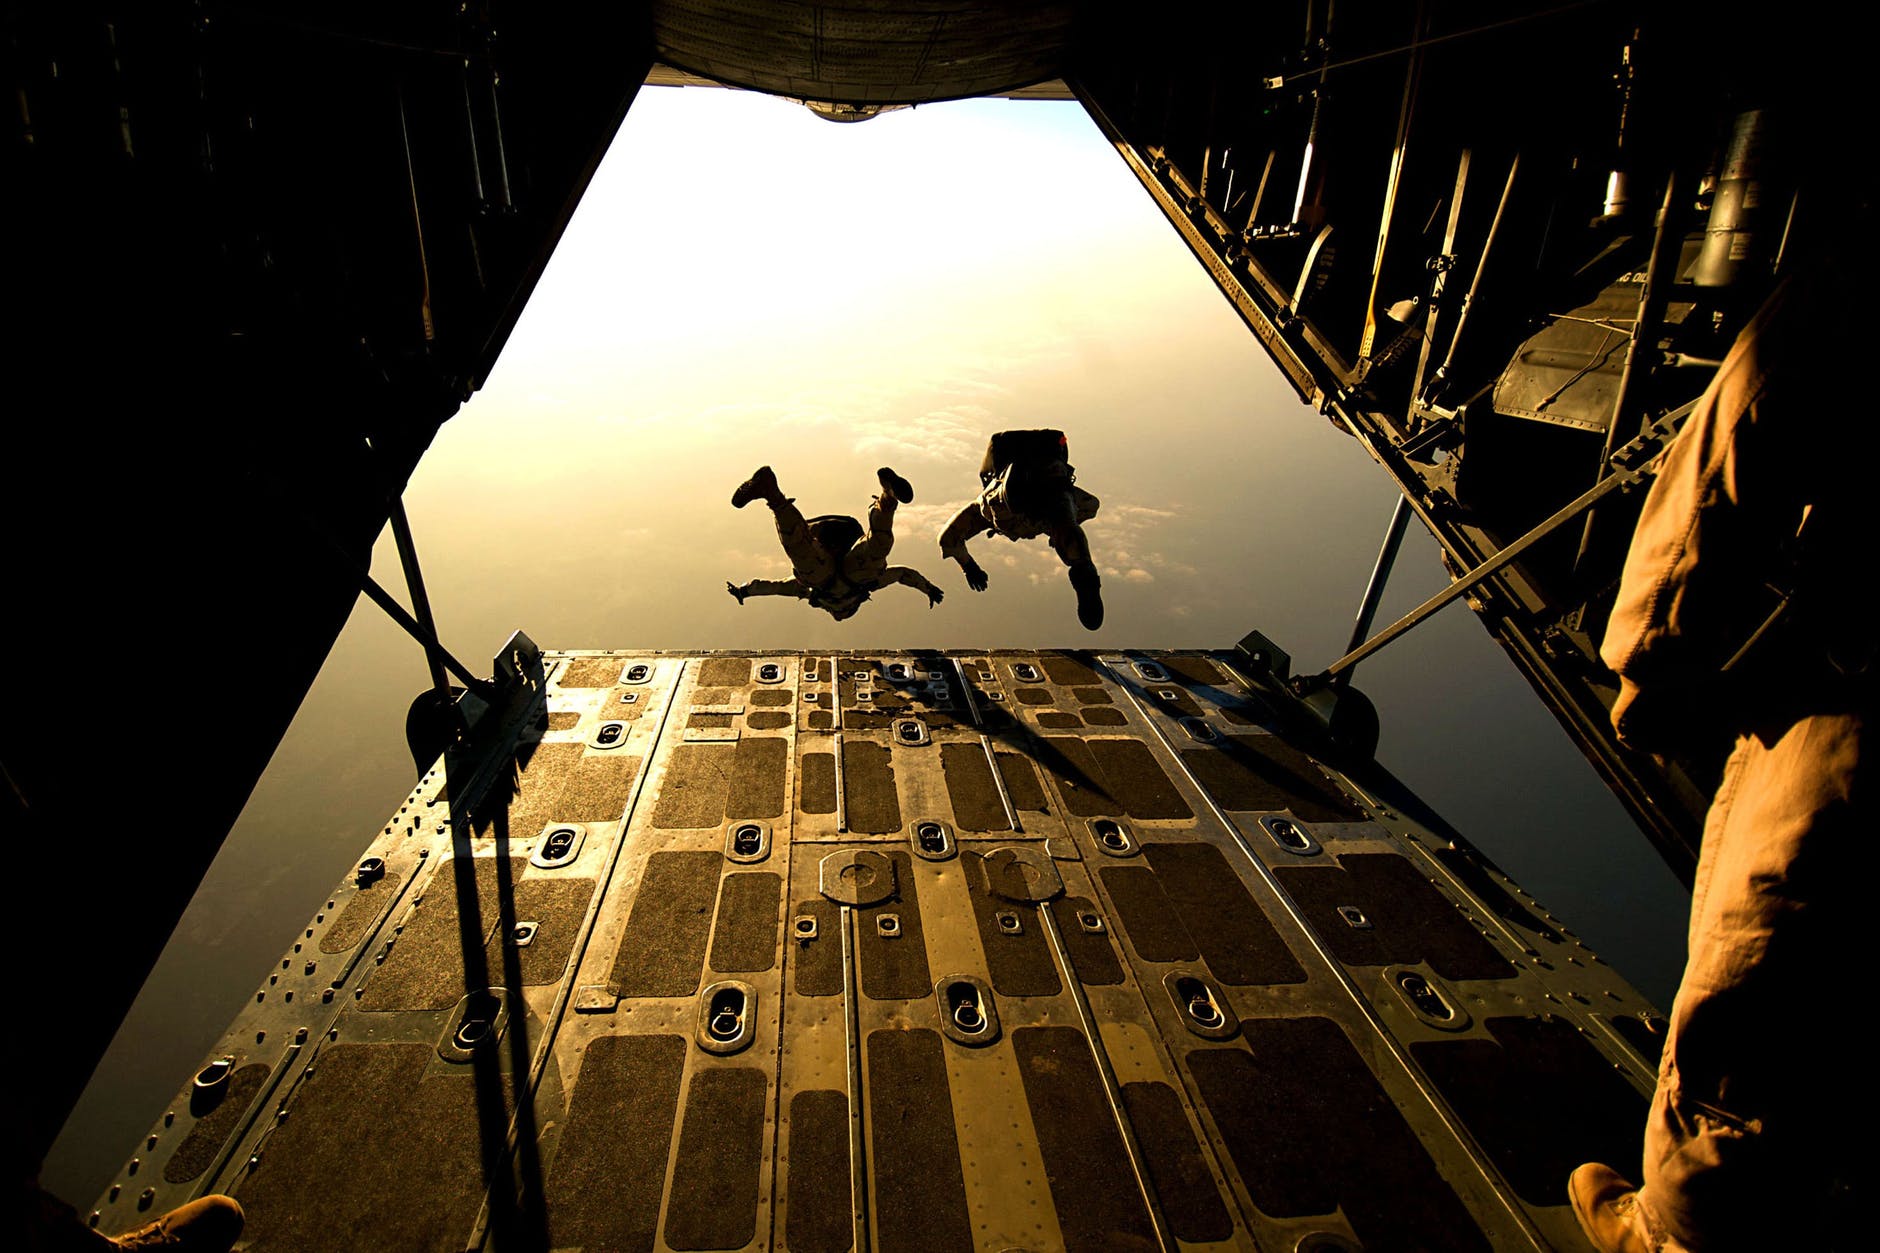 parachute-skydiving-parachuting-jumping-38447.jpeg